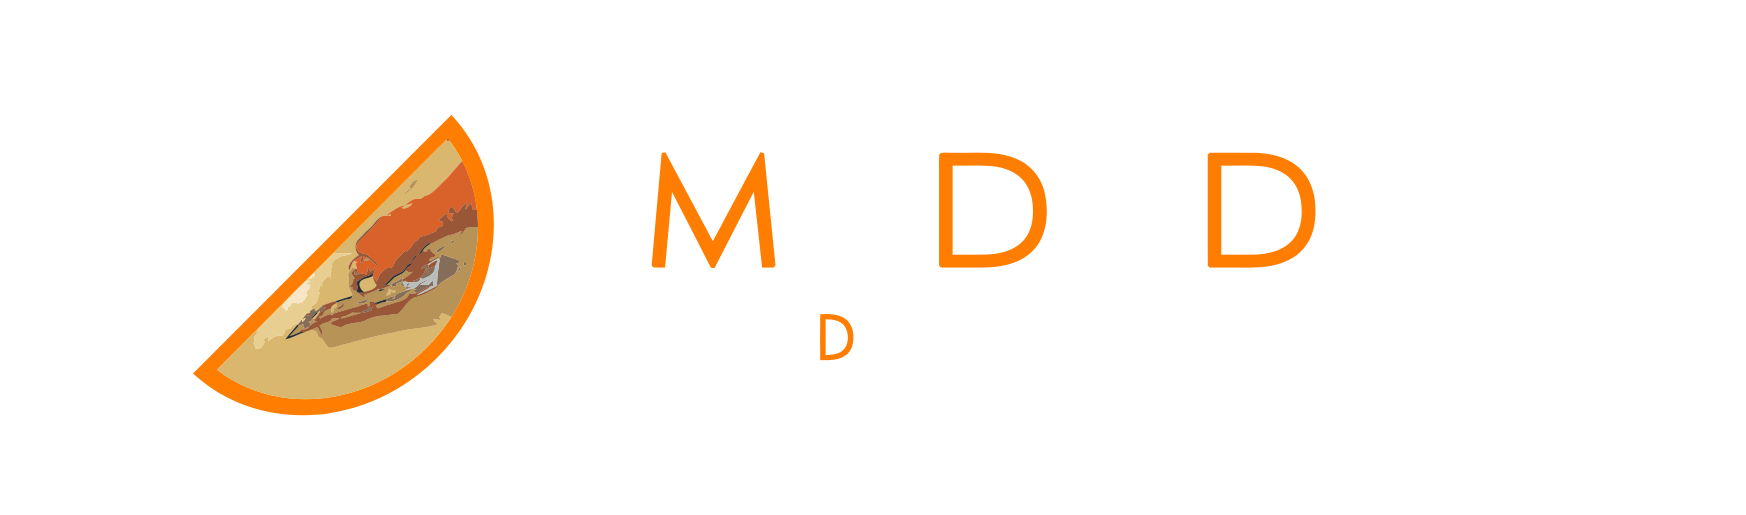 MariDani Design srl